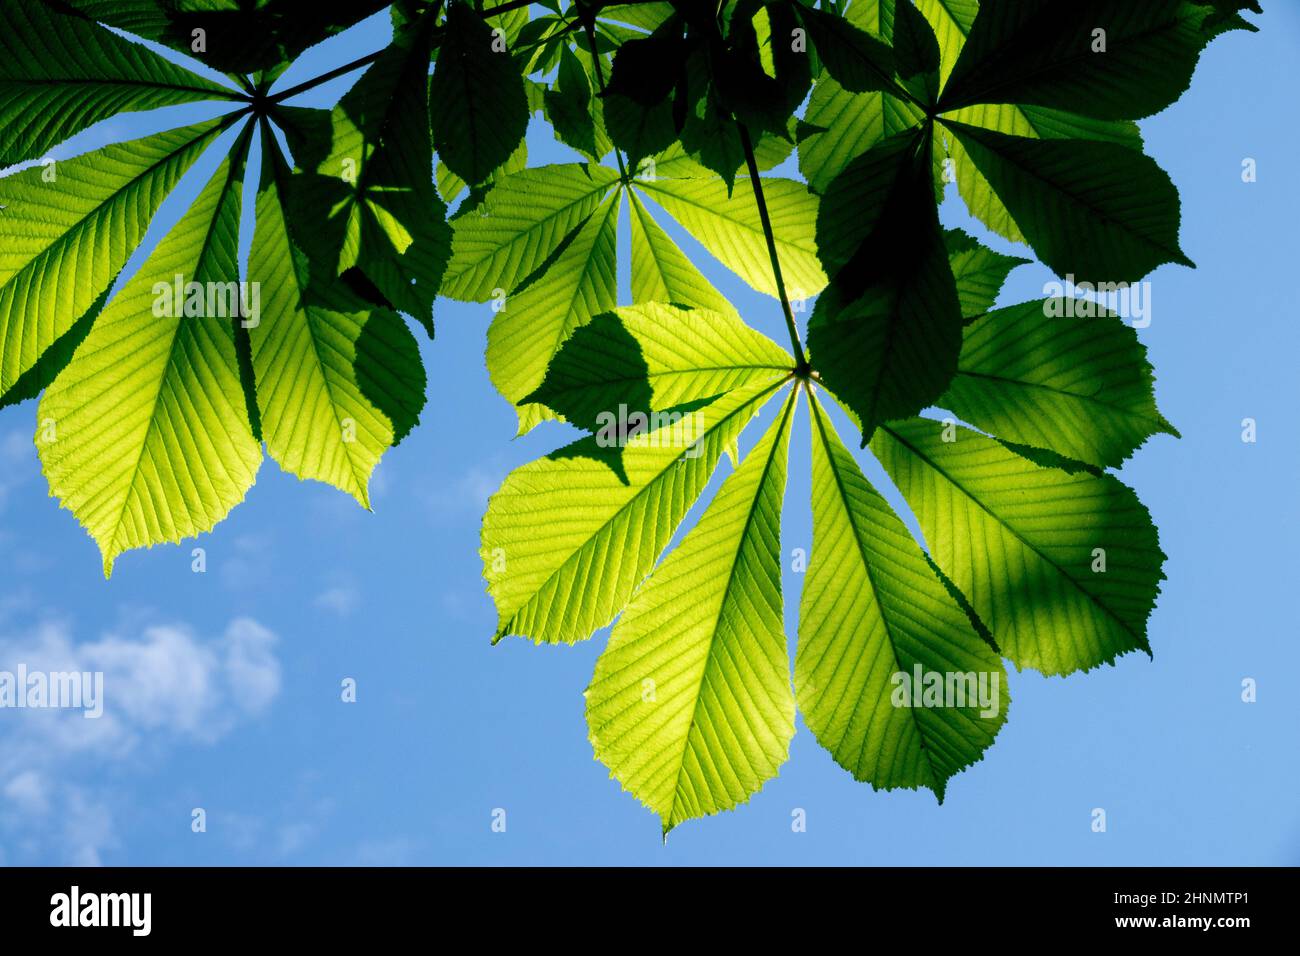 Gewöhnliche Rosskastanie hinterlässt Hintergrundbeleuchtung, Blatt des Aesculus hippocastanum am blauen Himmel mit Blick auf die Himmelpflanzen Stockfoto